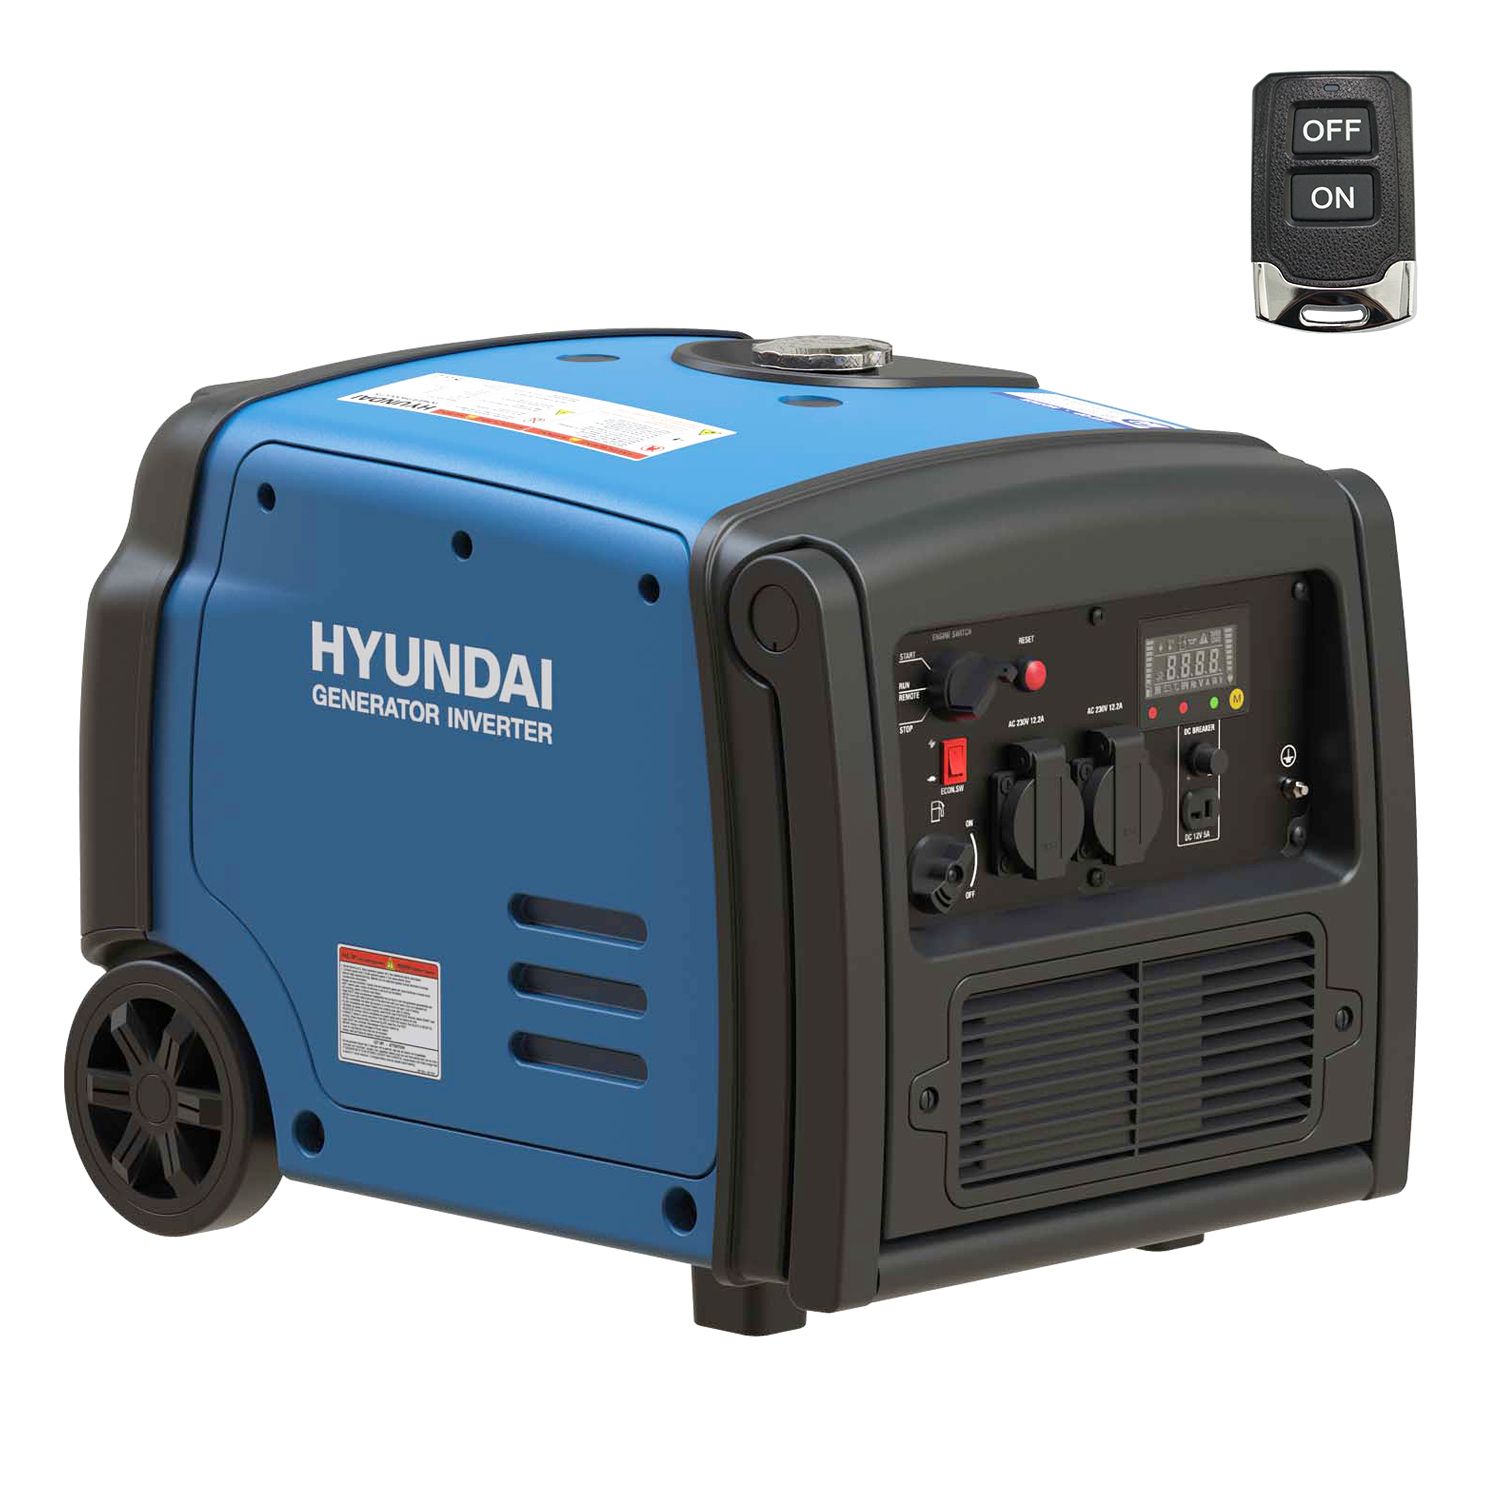 Hyundai generator / inverter 3,2kW